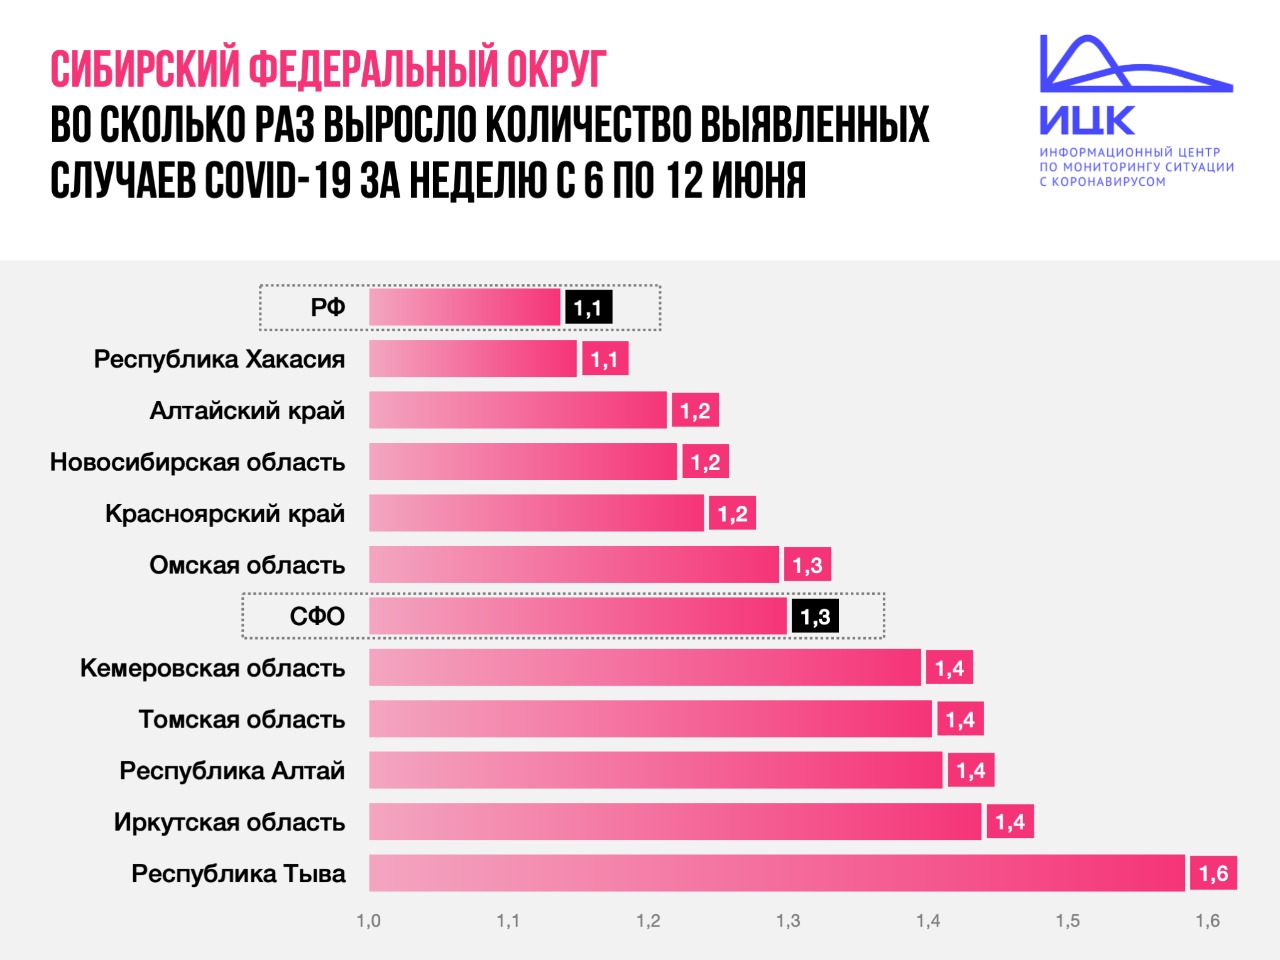 ​Количество случаев коронавируса в Алтайском крае выросло в 1,2 раза за неделю. Это медленнее, чем в среднем по Сибири